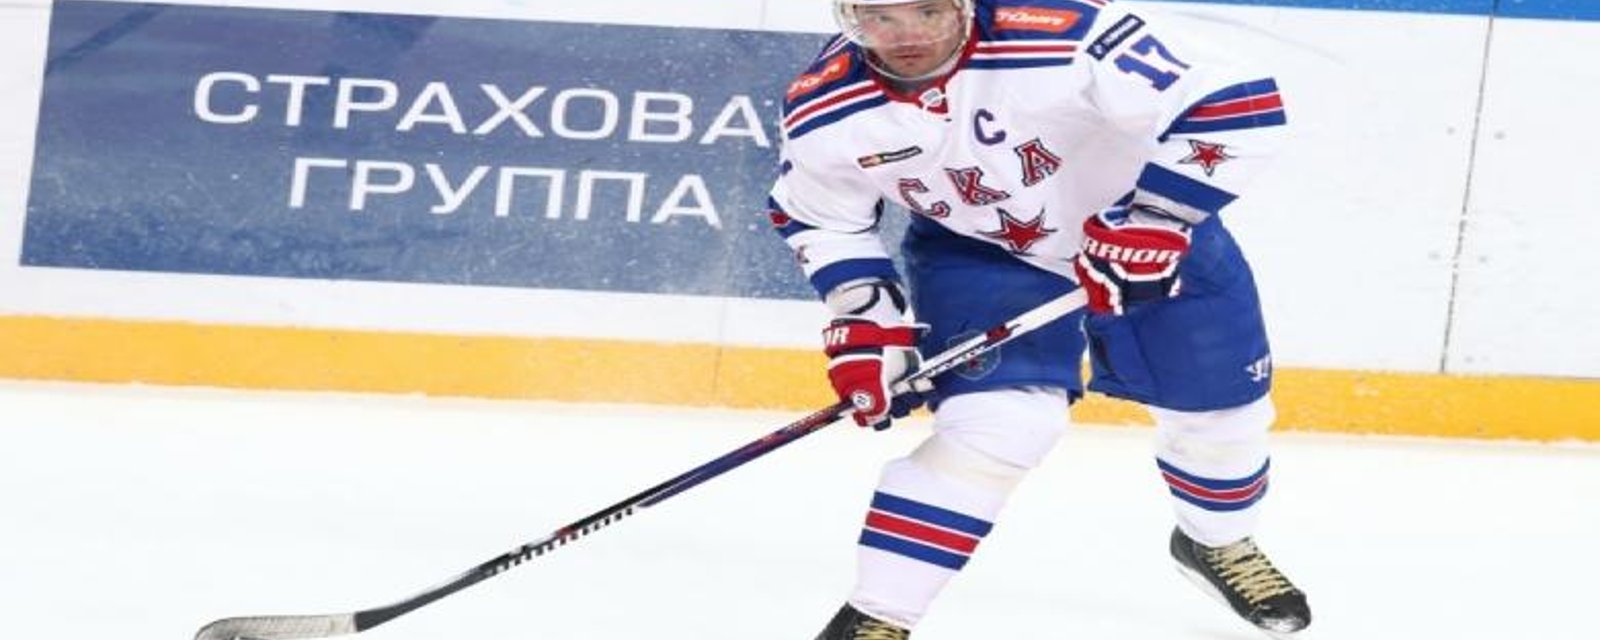 Coup de théâtre dans la KHL!